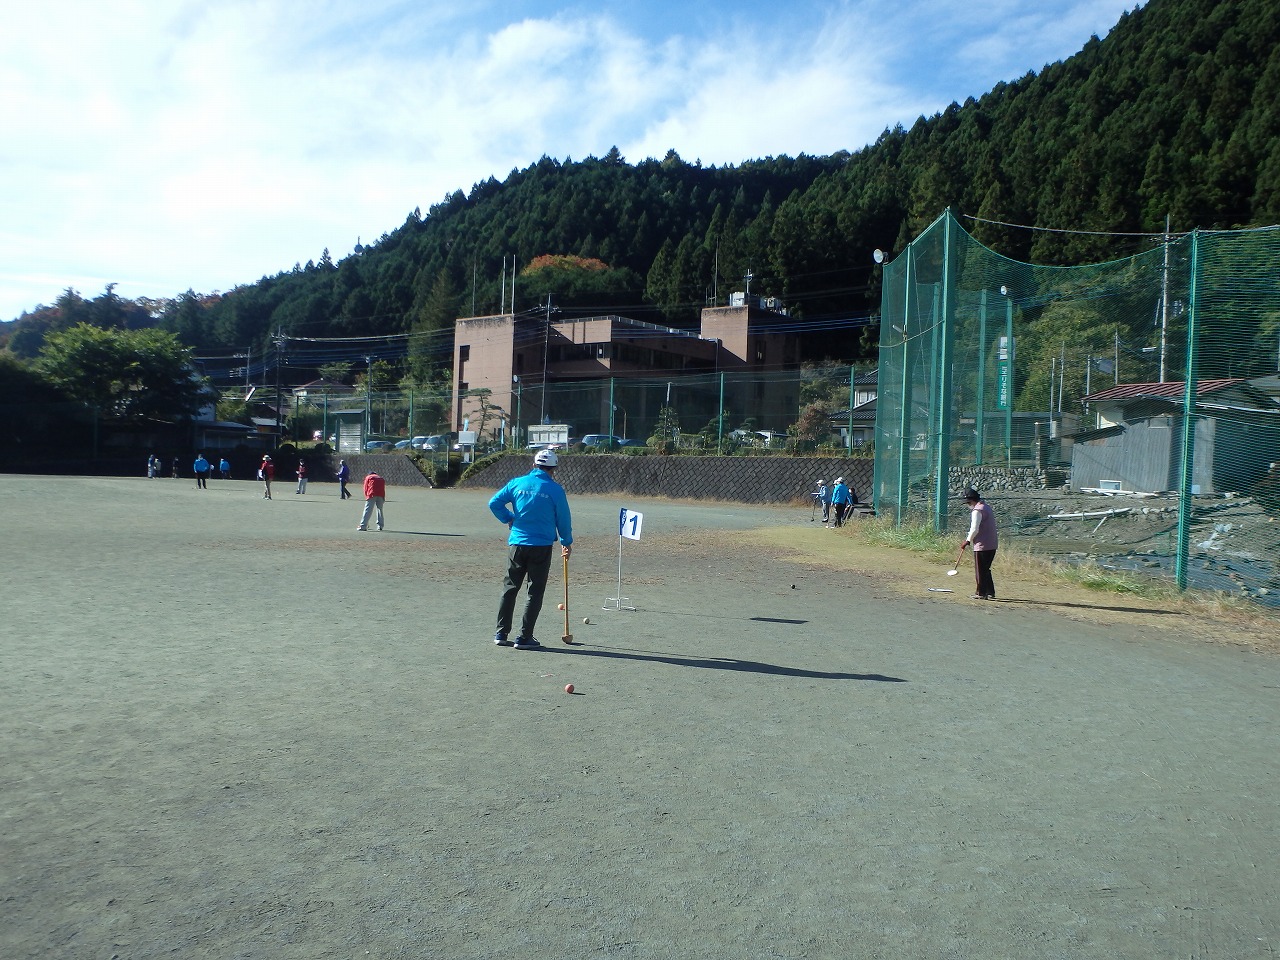 グラウンドで参加者がグラウンドゴルフ用のスティックでボールを打っている